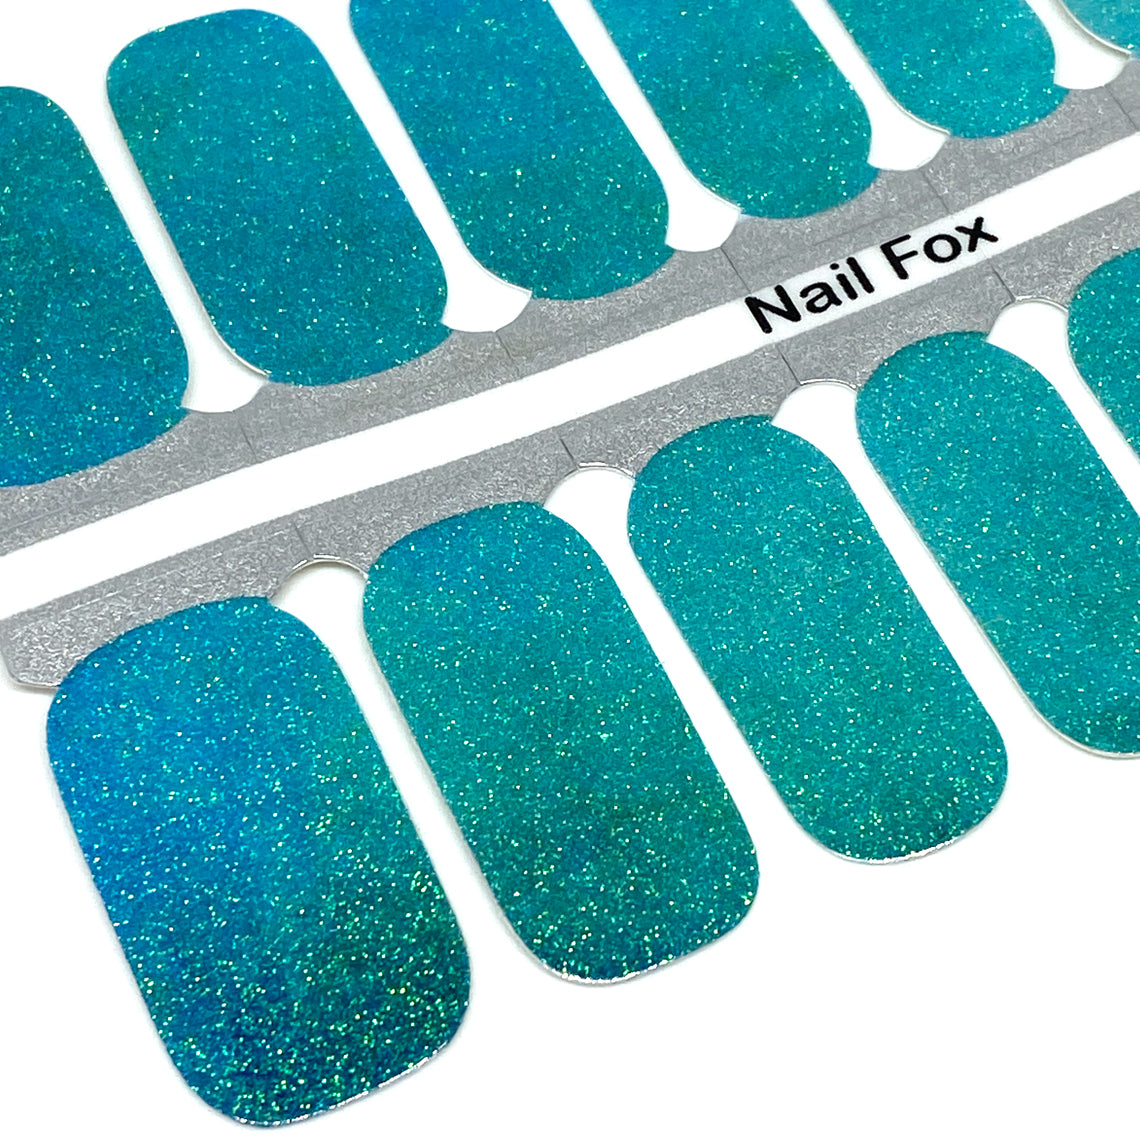 Turquoise Glitter Nail Wraps